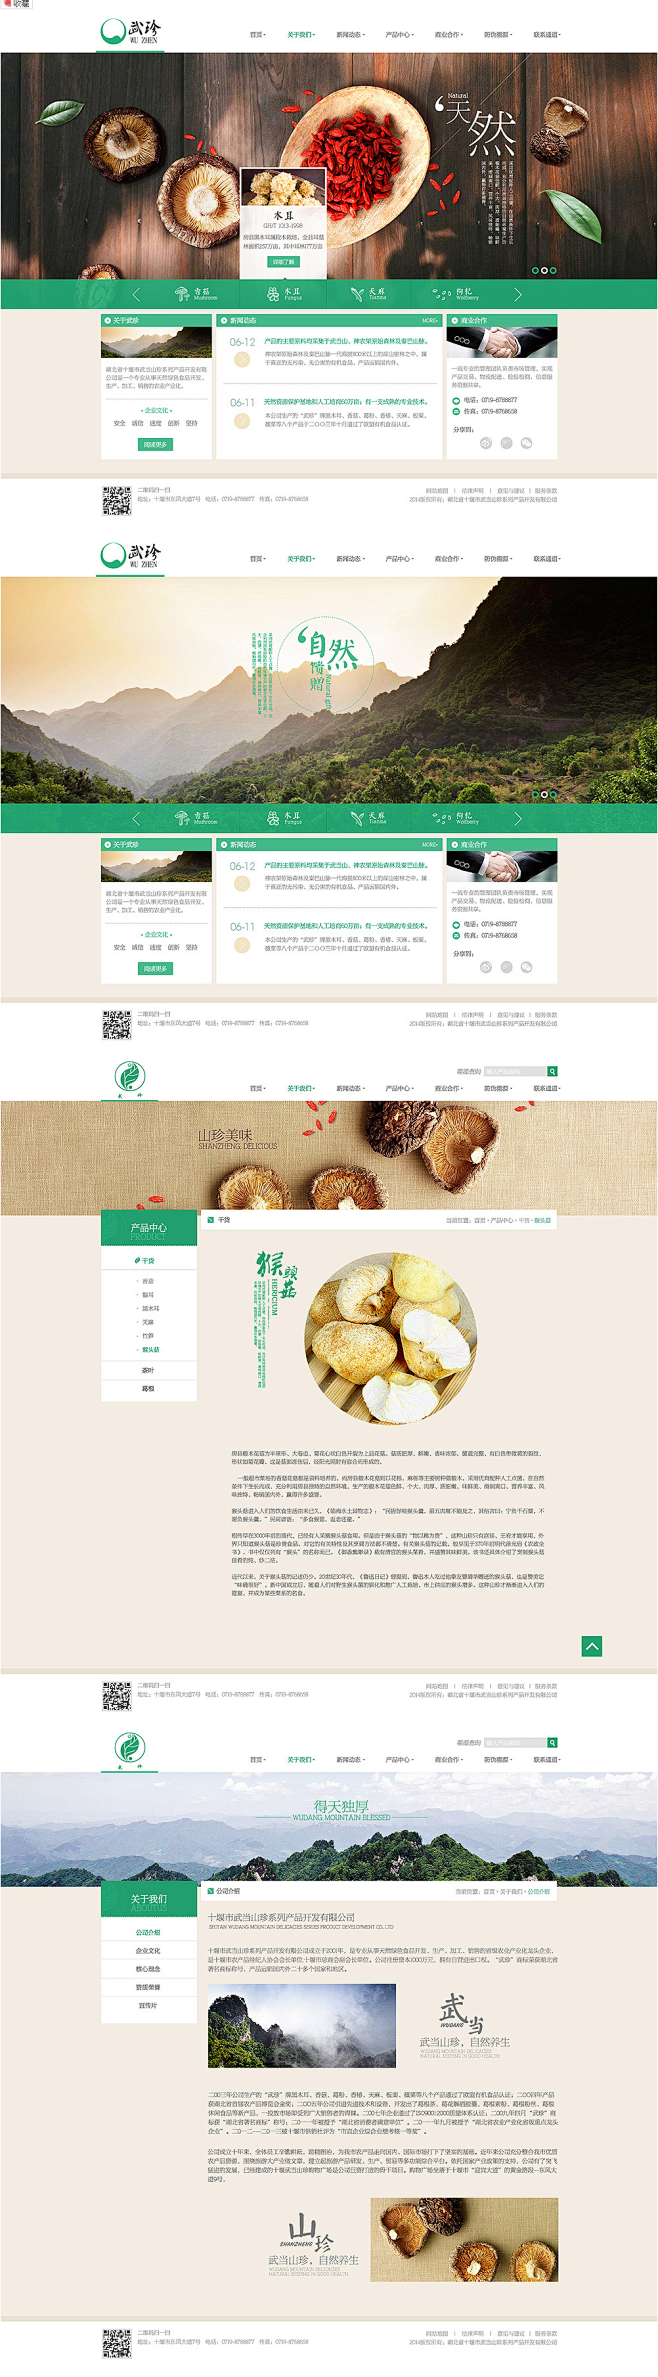 企业网站 by Clh杨华 - UE设计...